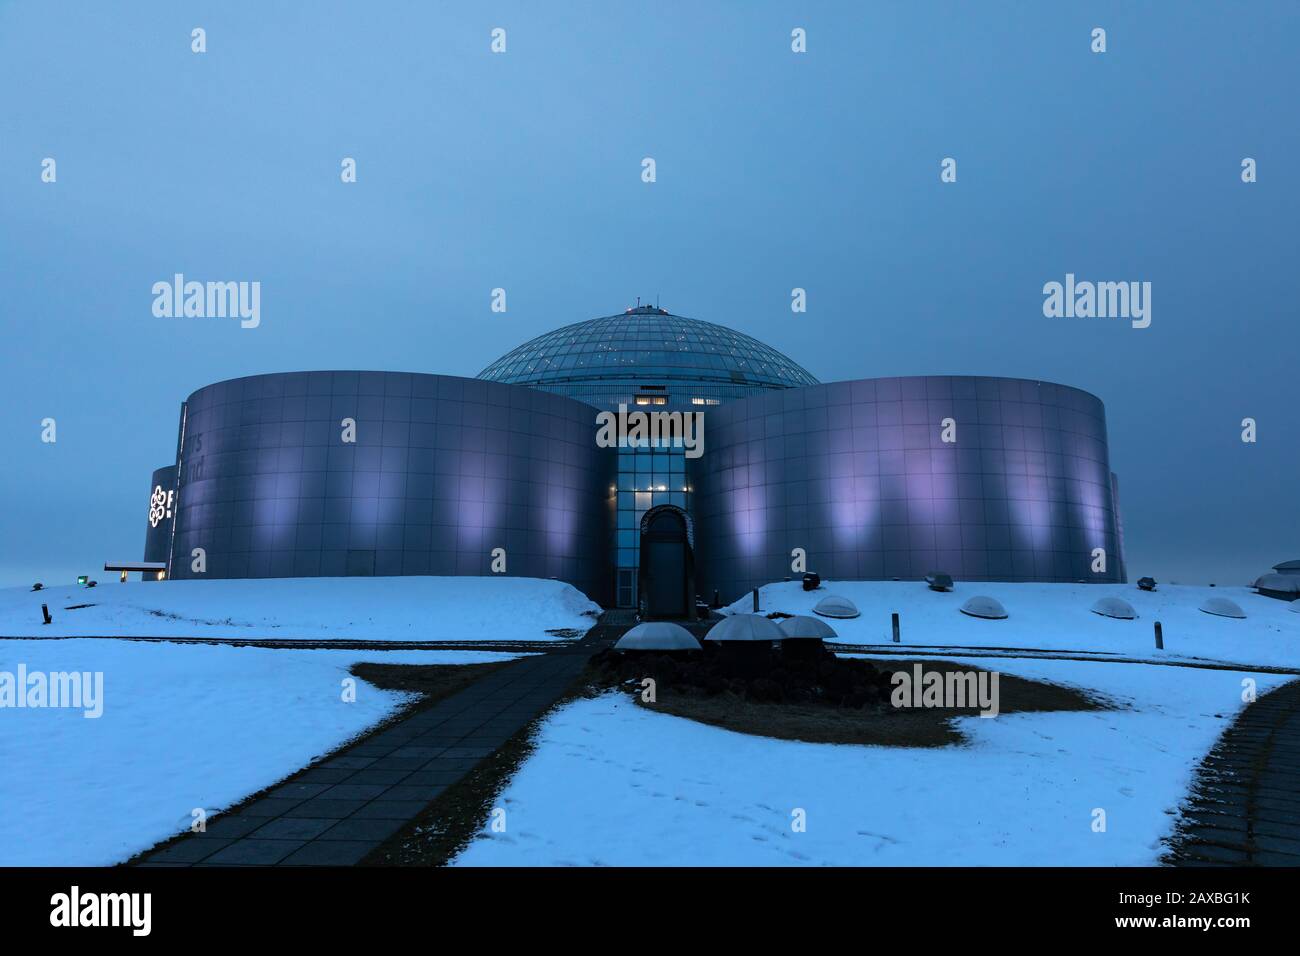 Reykjavik, Islande - 18 Janvier 2020 : Le Musée Perlan Et Le Planitarium De Reykjavik. Ce bâtiment moderne se compose de réservoirs remplis de la géothermie wa Banque D'Images